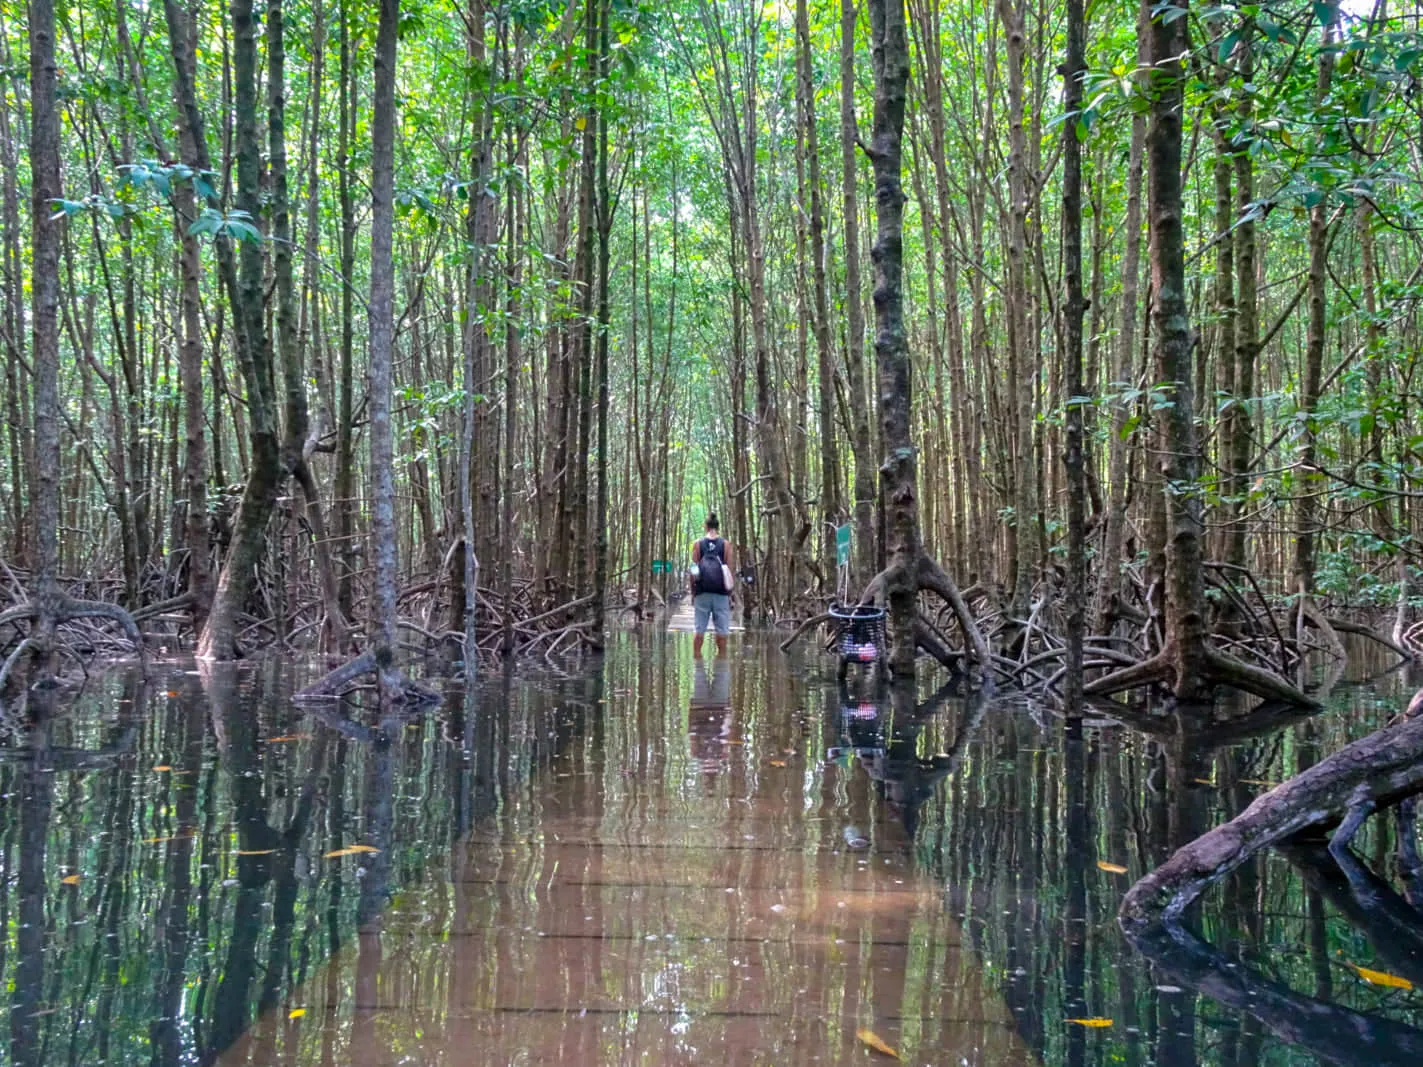 Cambodia: Koh Kong, Mangroves and Mountains